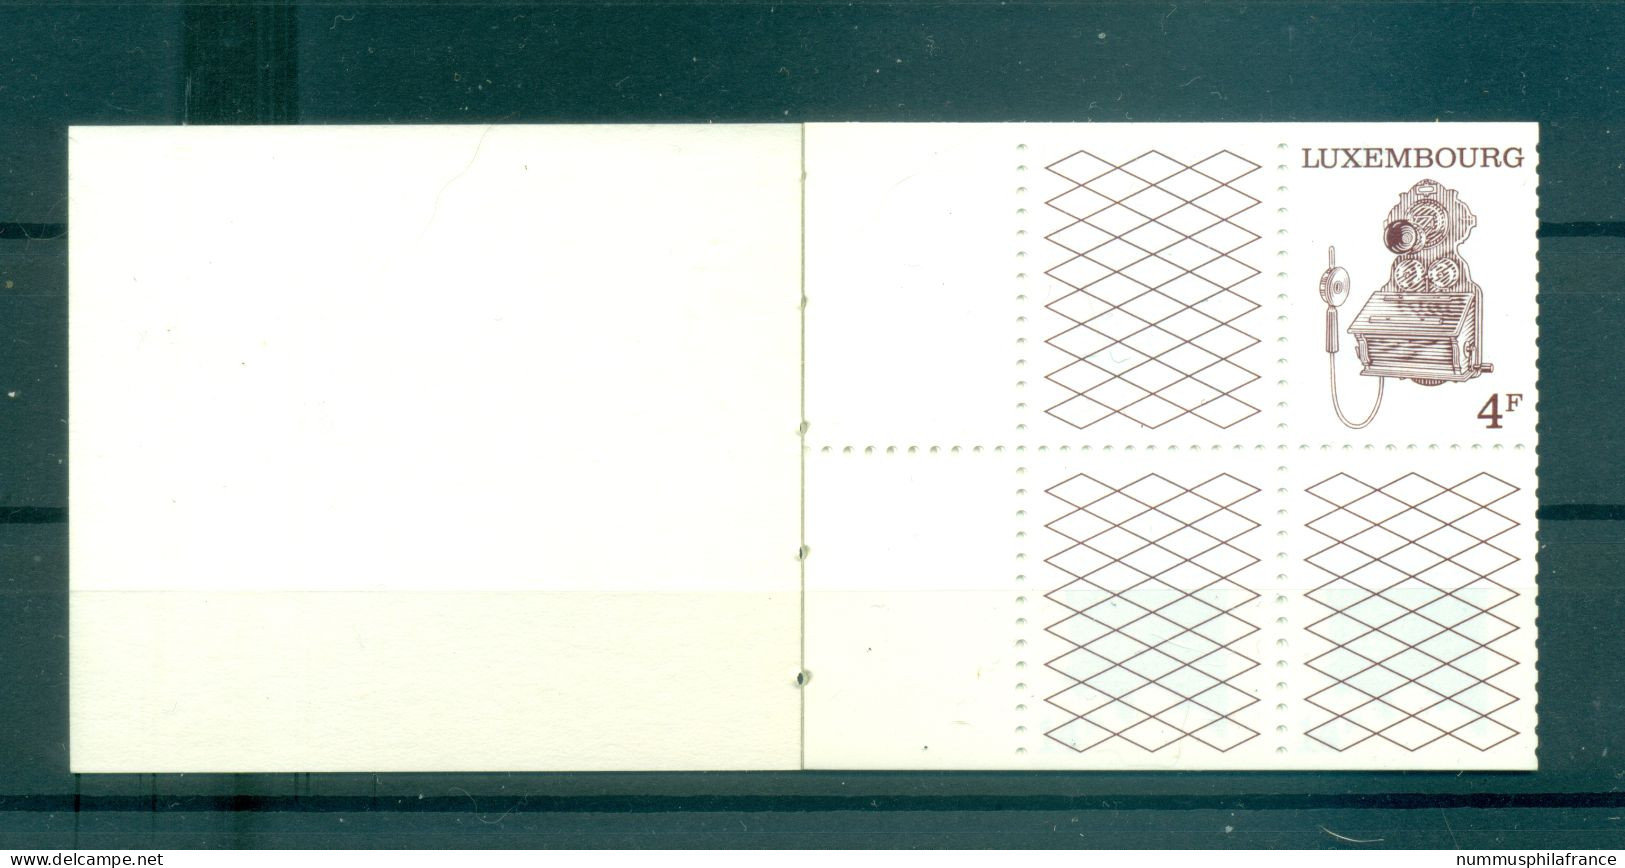 Luxembourg 1991 - Y & T Carnet N. C1232 - Postes Et Téléphones (Michel Carnet N. MH 3) - Postzegelboekjes